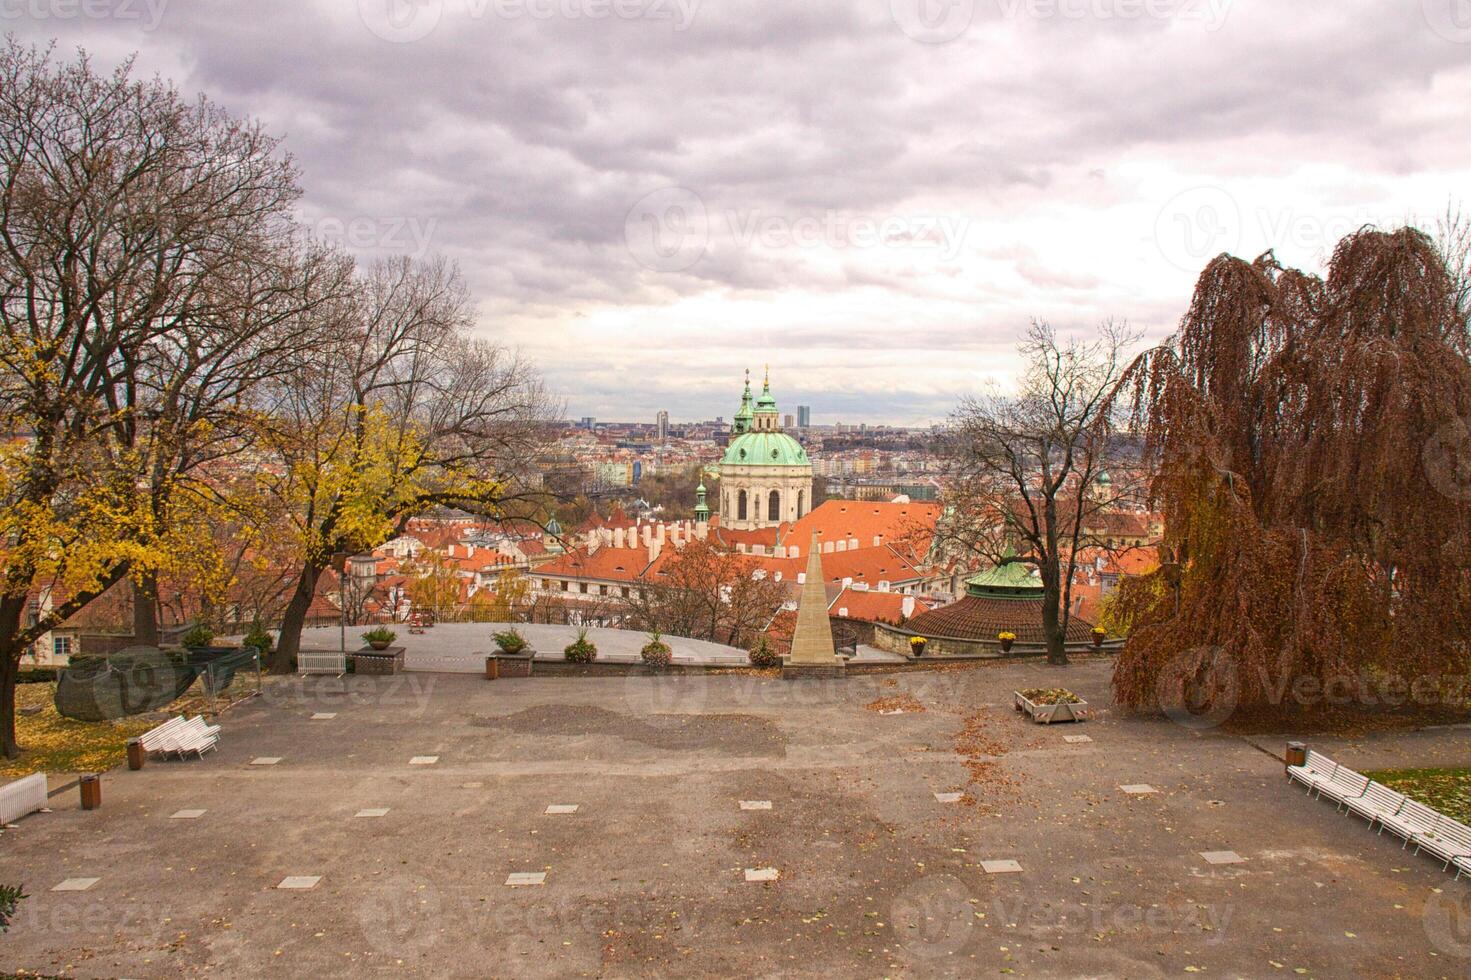 uitzicht op de oude stad van Praag foto